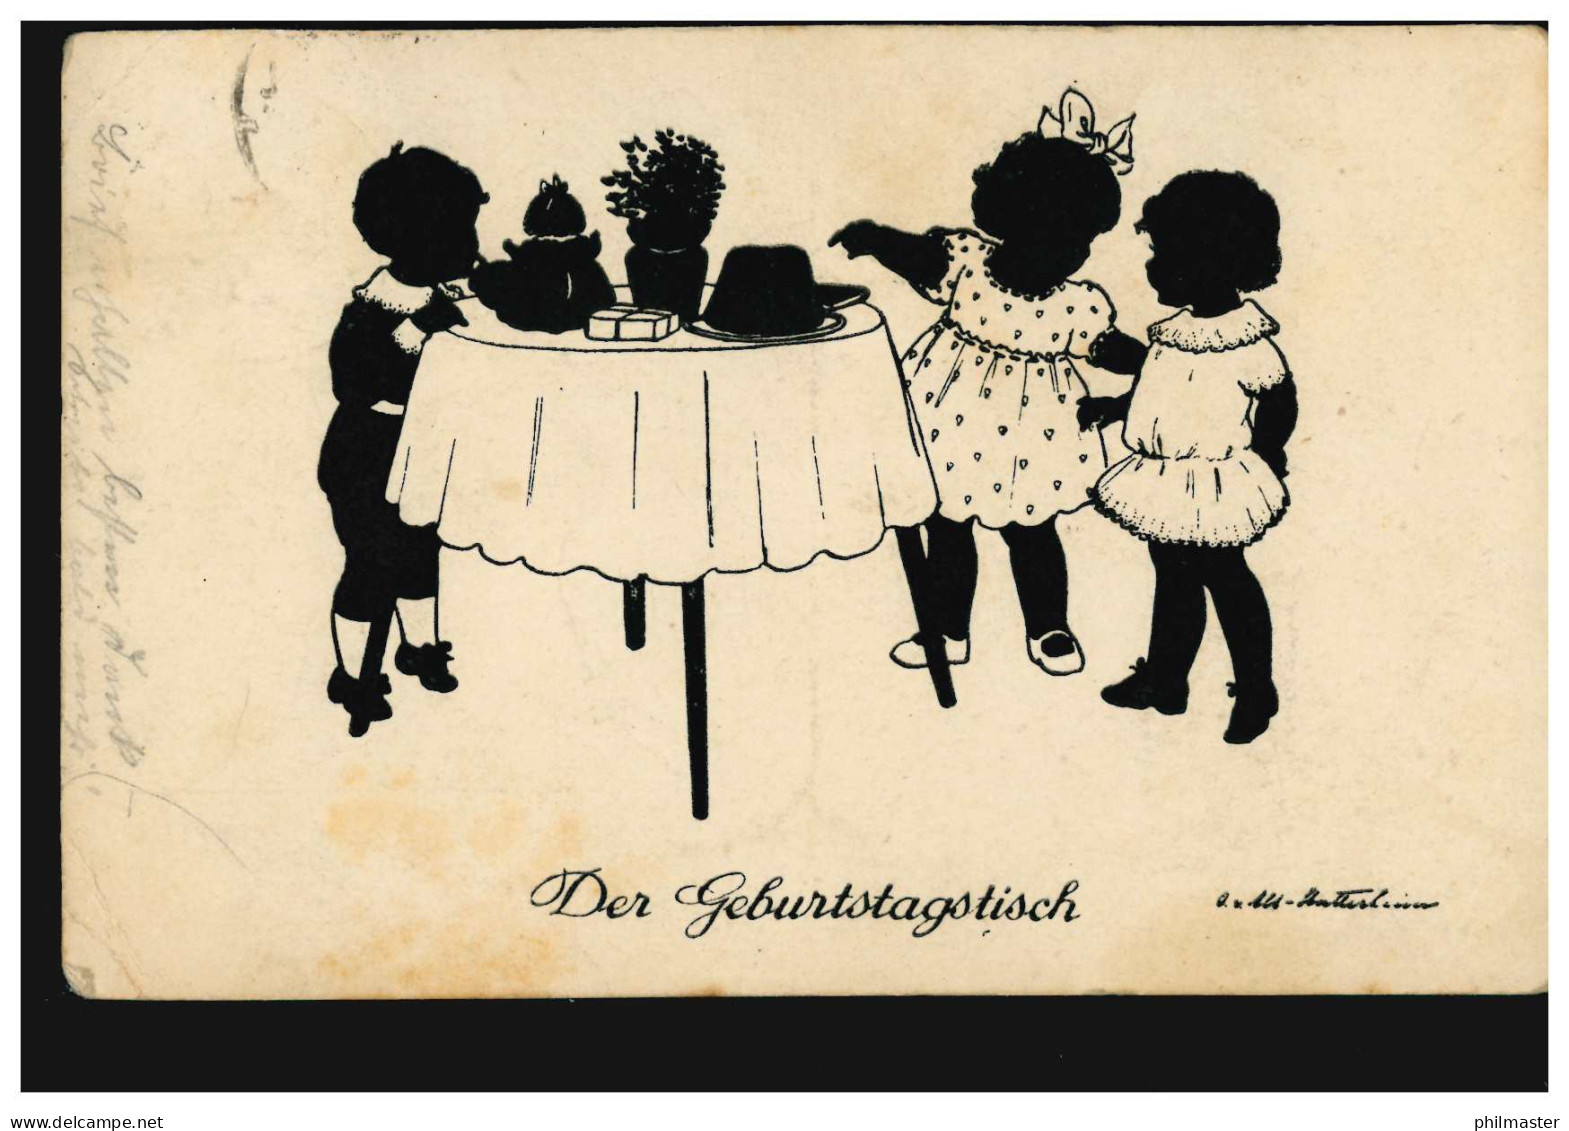 Scherenschnitt-AK Der Geburtstagstisch, Verlag G.K.V. Berlin, RHEYDT 23.6.1926 - Silhouettes